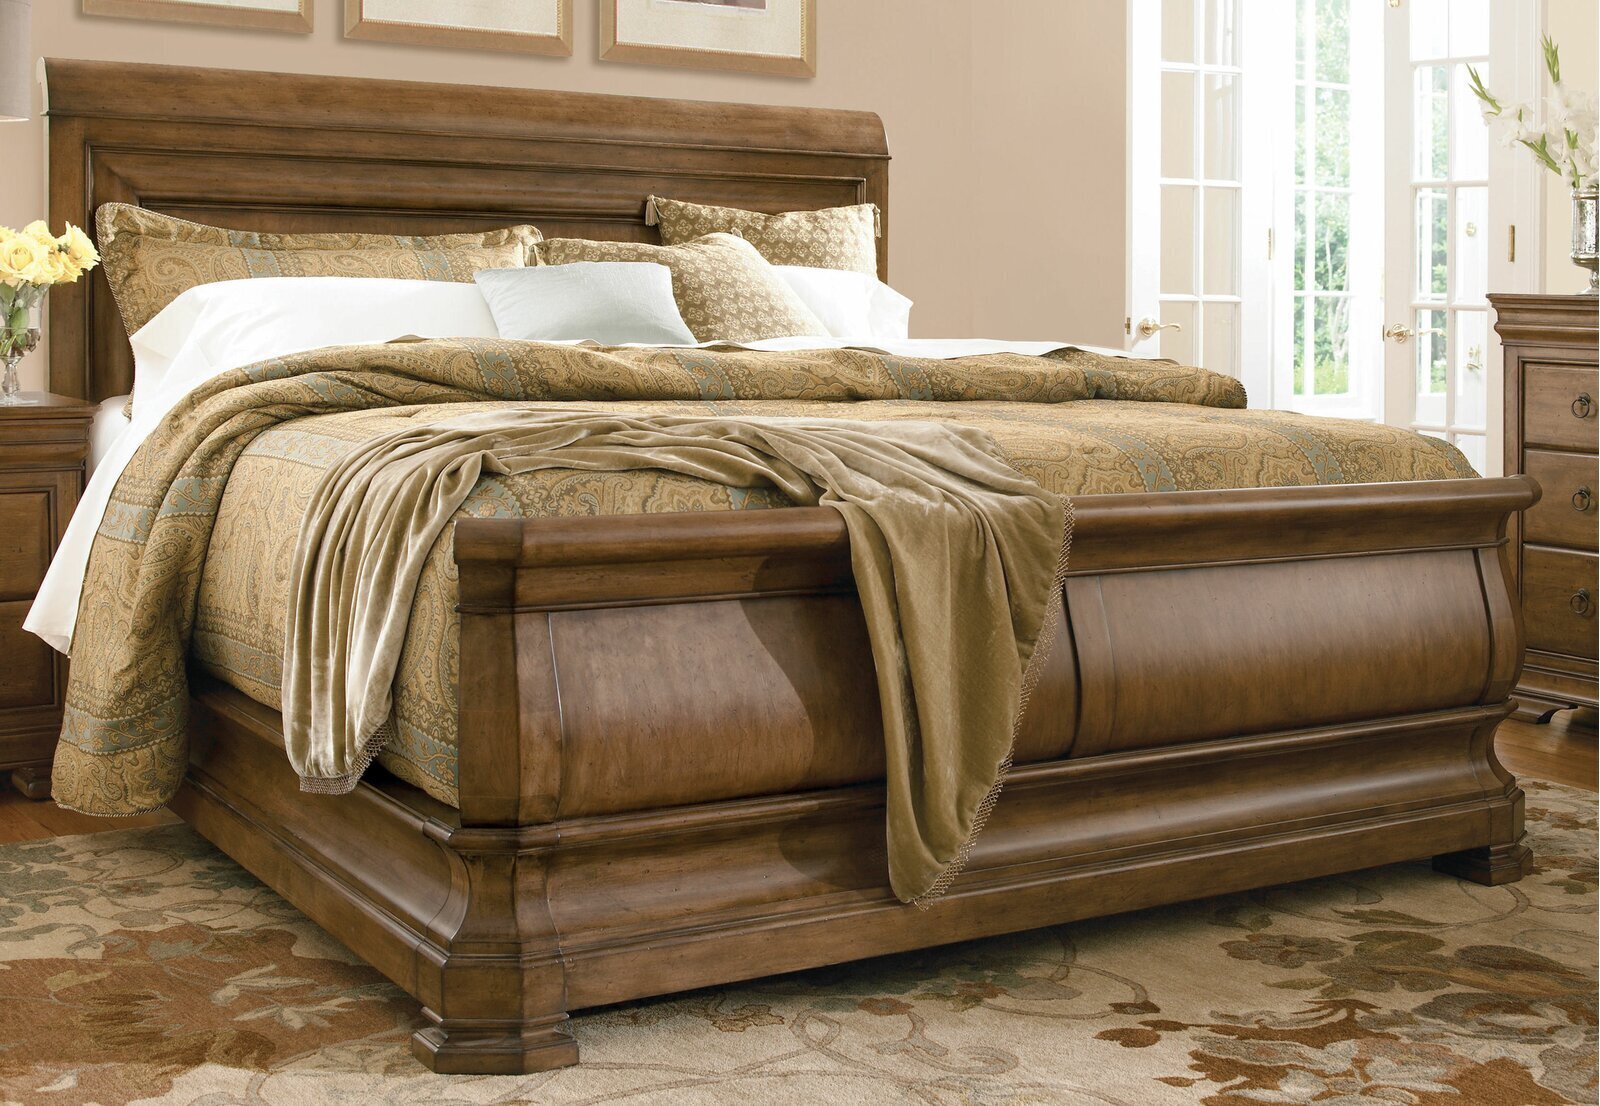 Solid wood brown furniture bedroom